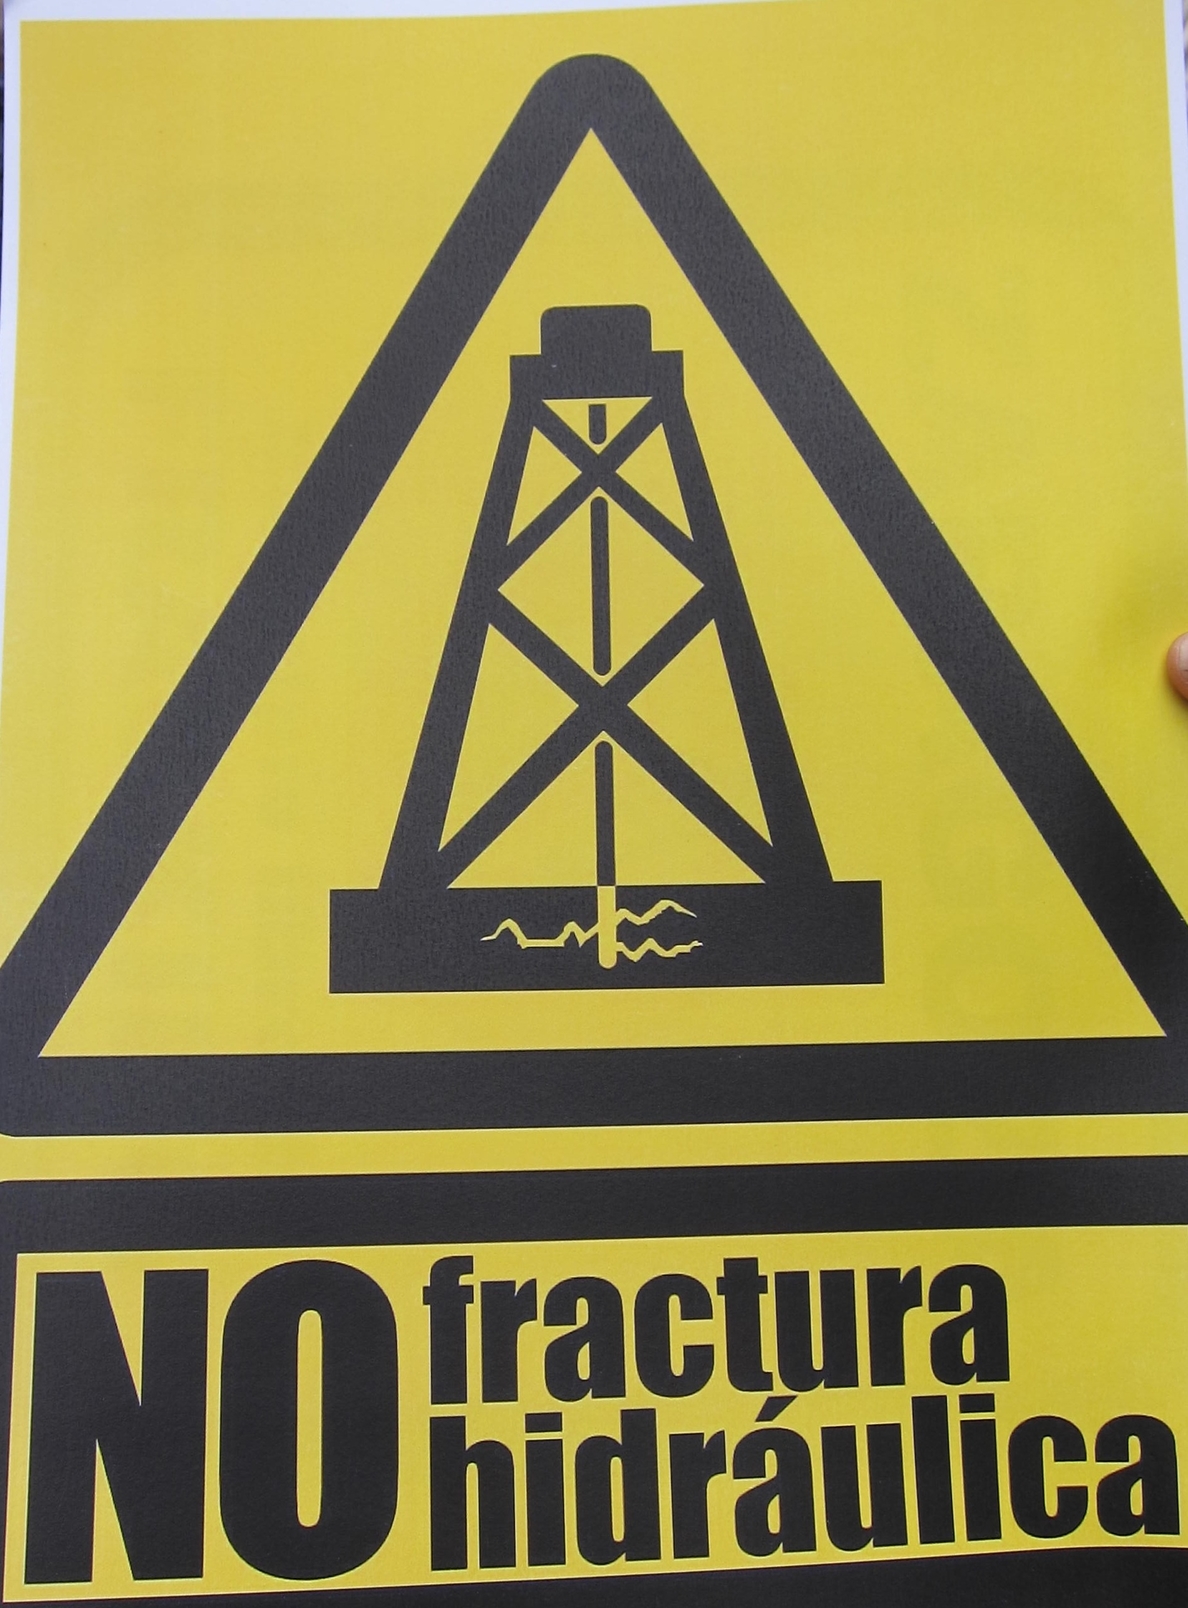 La cuenca vasco-cantábrica se une contra el fracking y participa en un encuentro en Burgos